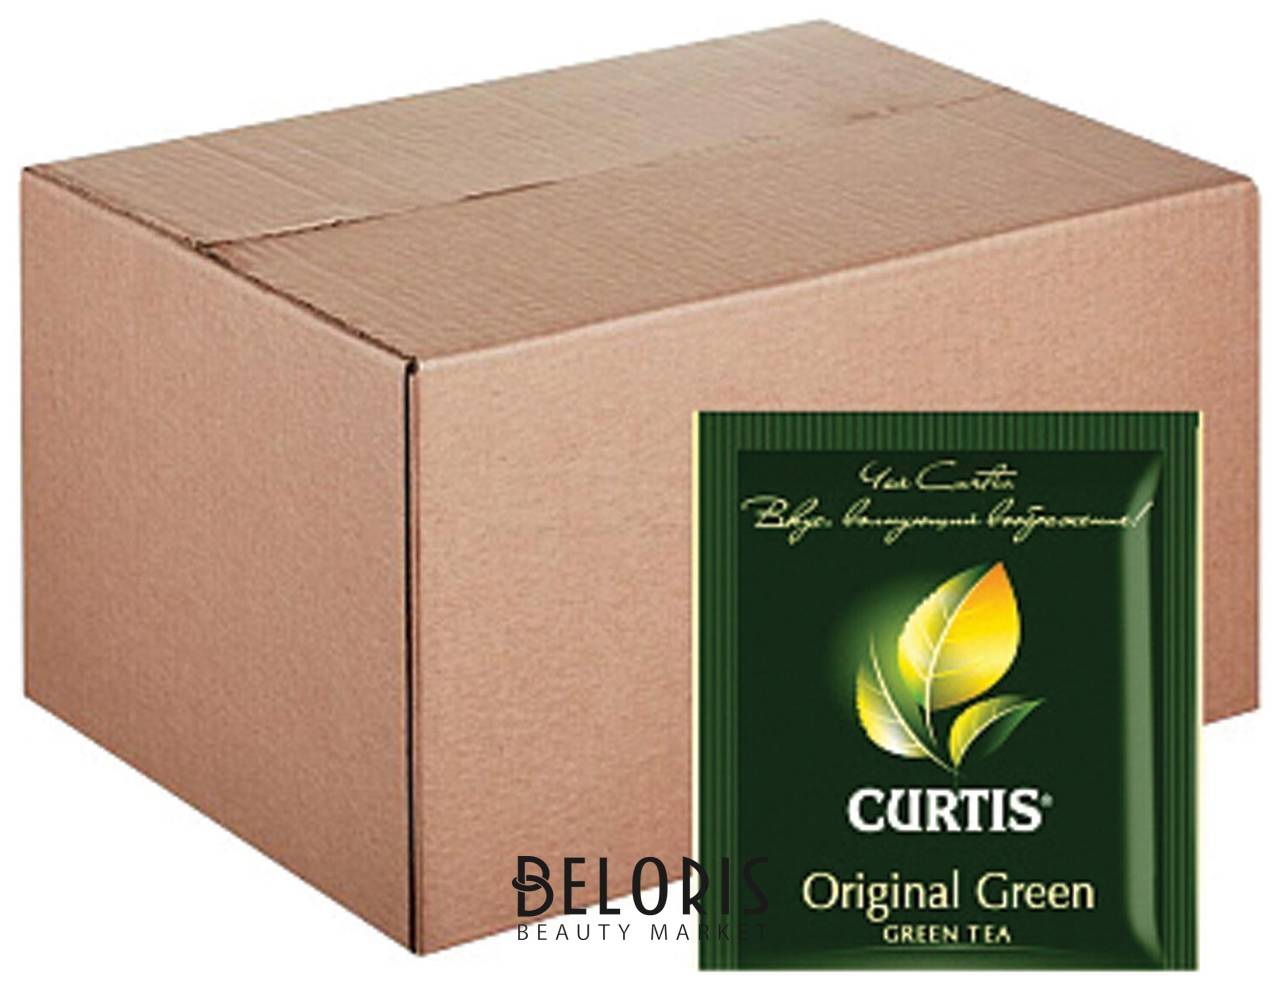 Чай Curtis Original Green, зеленый, 200 пакетиков в конвертах по 2 г, 510917 Curtis